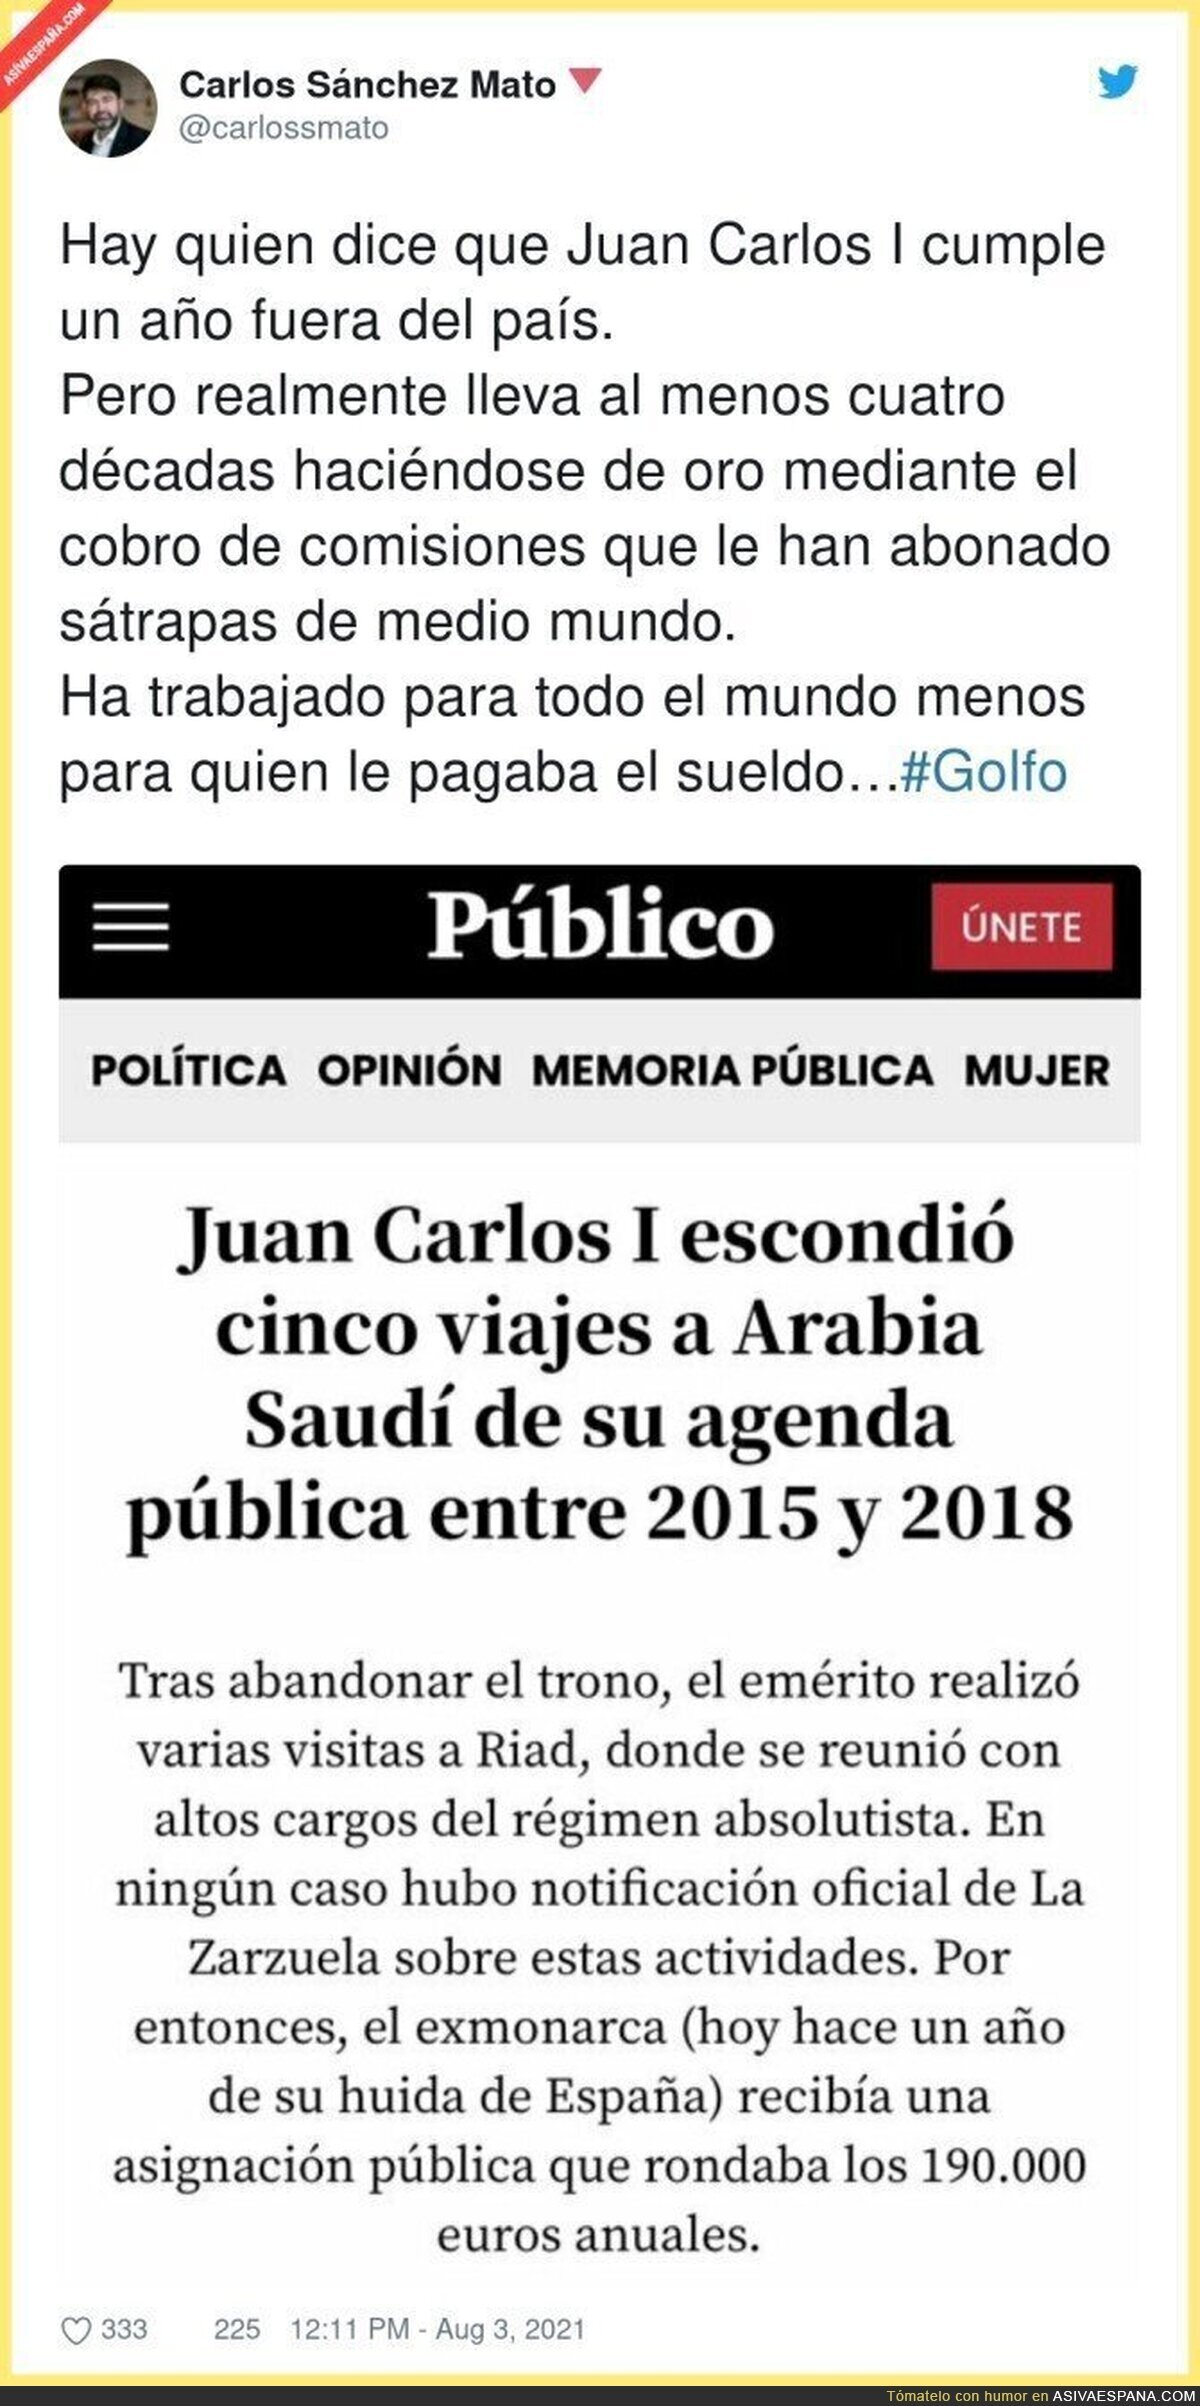 La vida oculta del Rey Juan Carlos